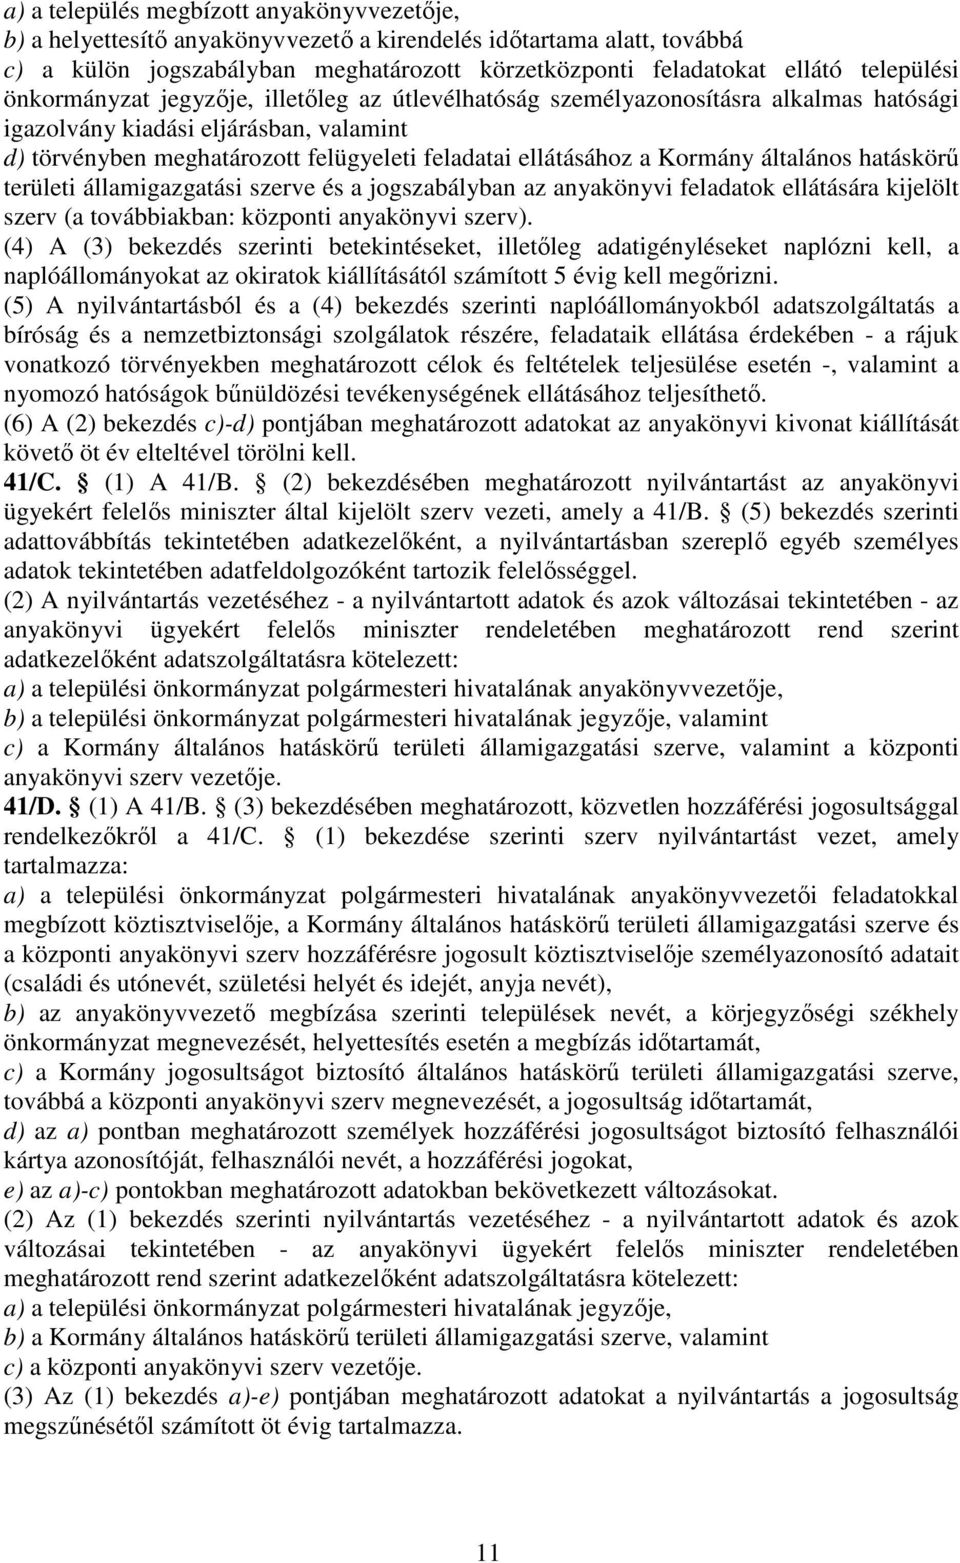 ellátásához a Kormány általános hatáskörű területi államigazgatási szerve és a jogszabályban az anyakönyvi feladatok ellátására kijelölt szerv (a továbbiakban: központi anyakönyvi szerv).